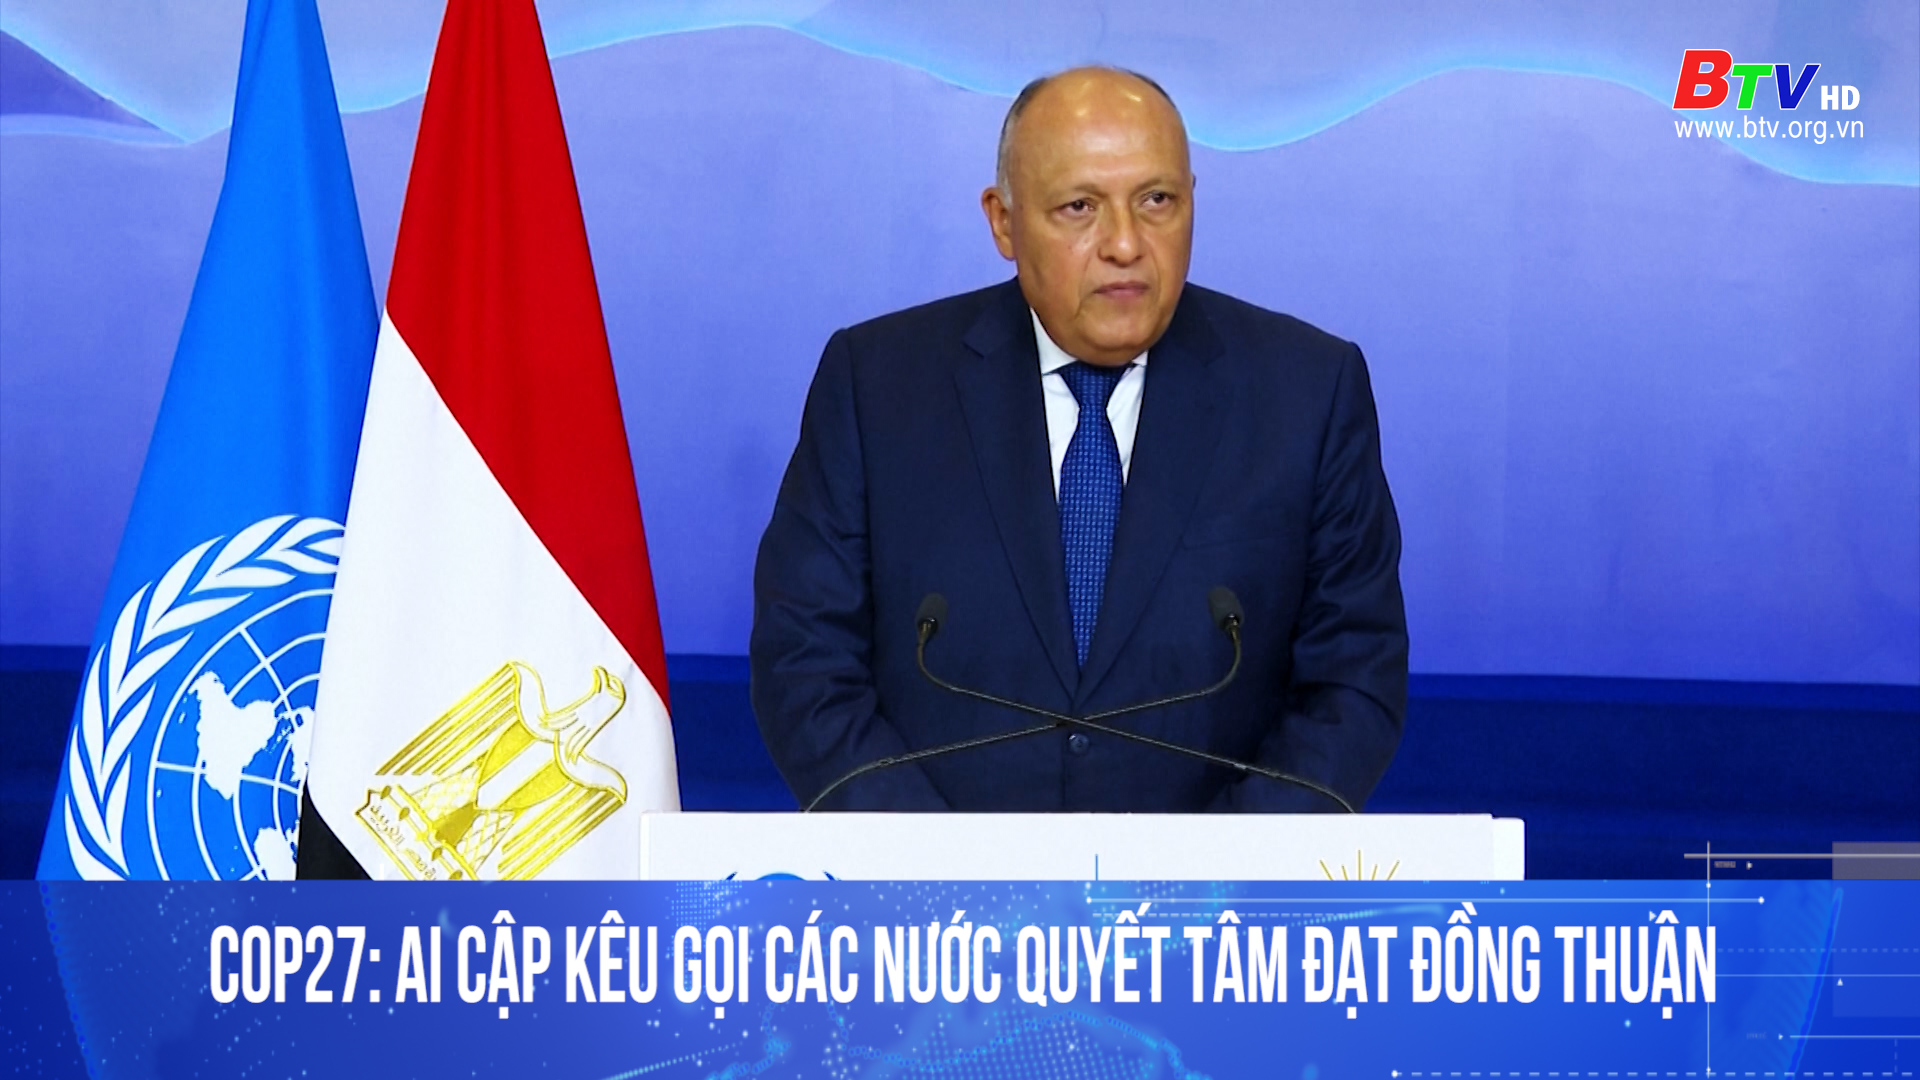 COP27: Ai Cập kêu gọi các nước quyết tâm đạt đồng thuận